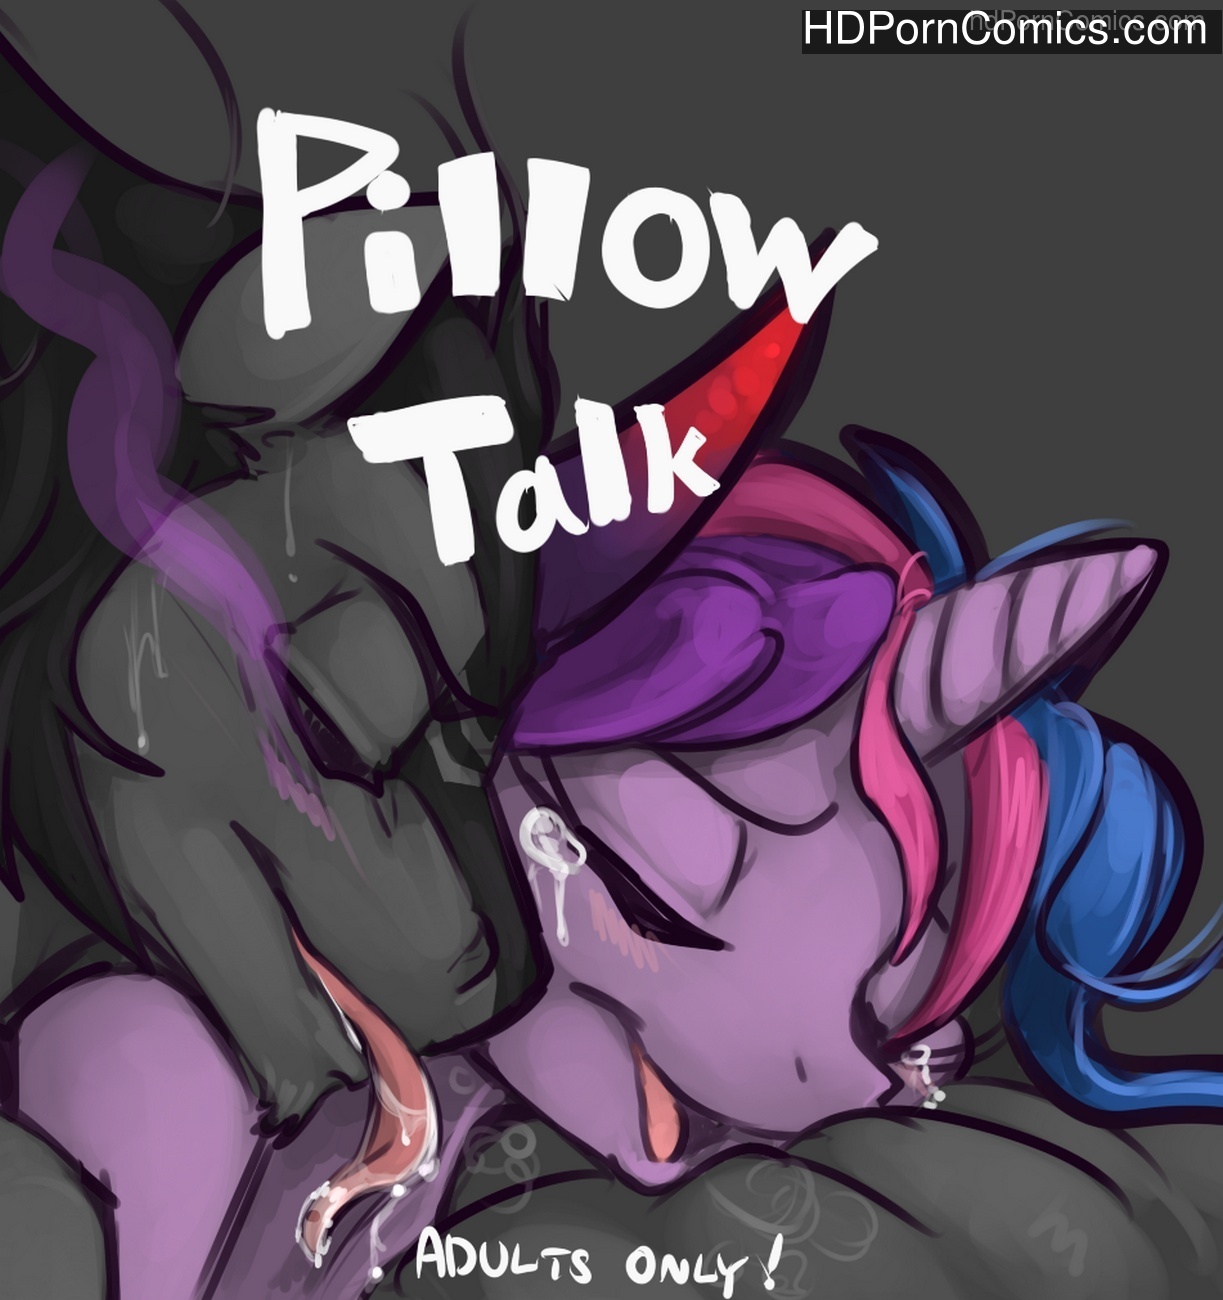 Pillow Talk Sex Comic - HD Porn Comics